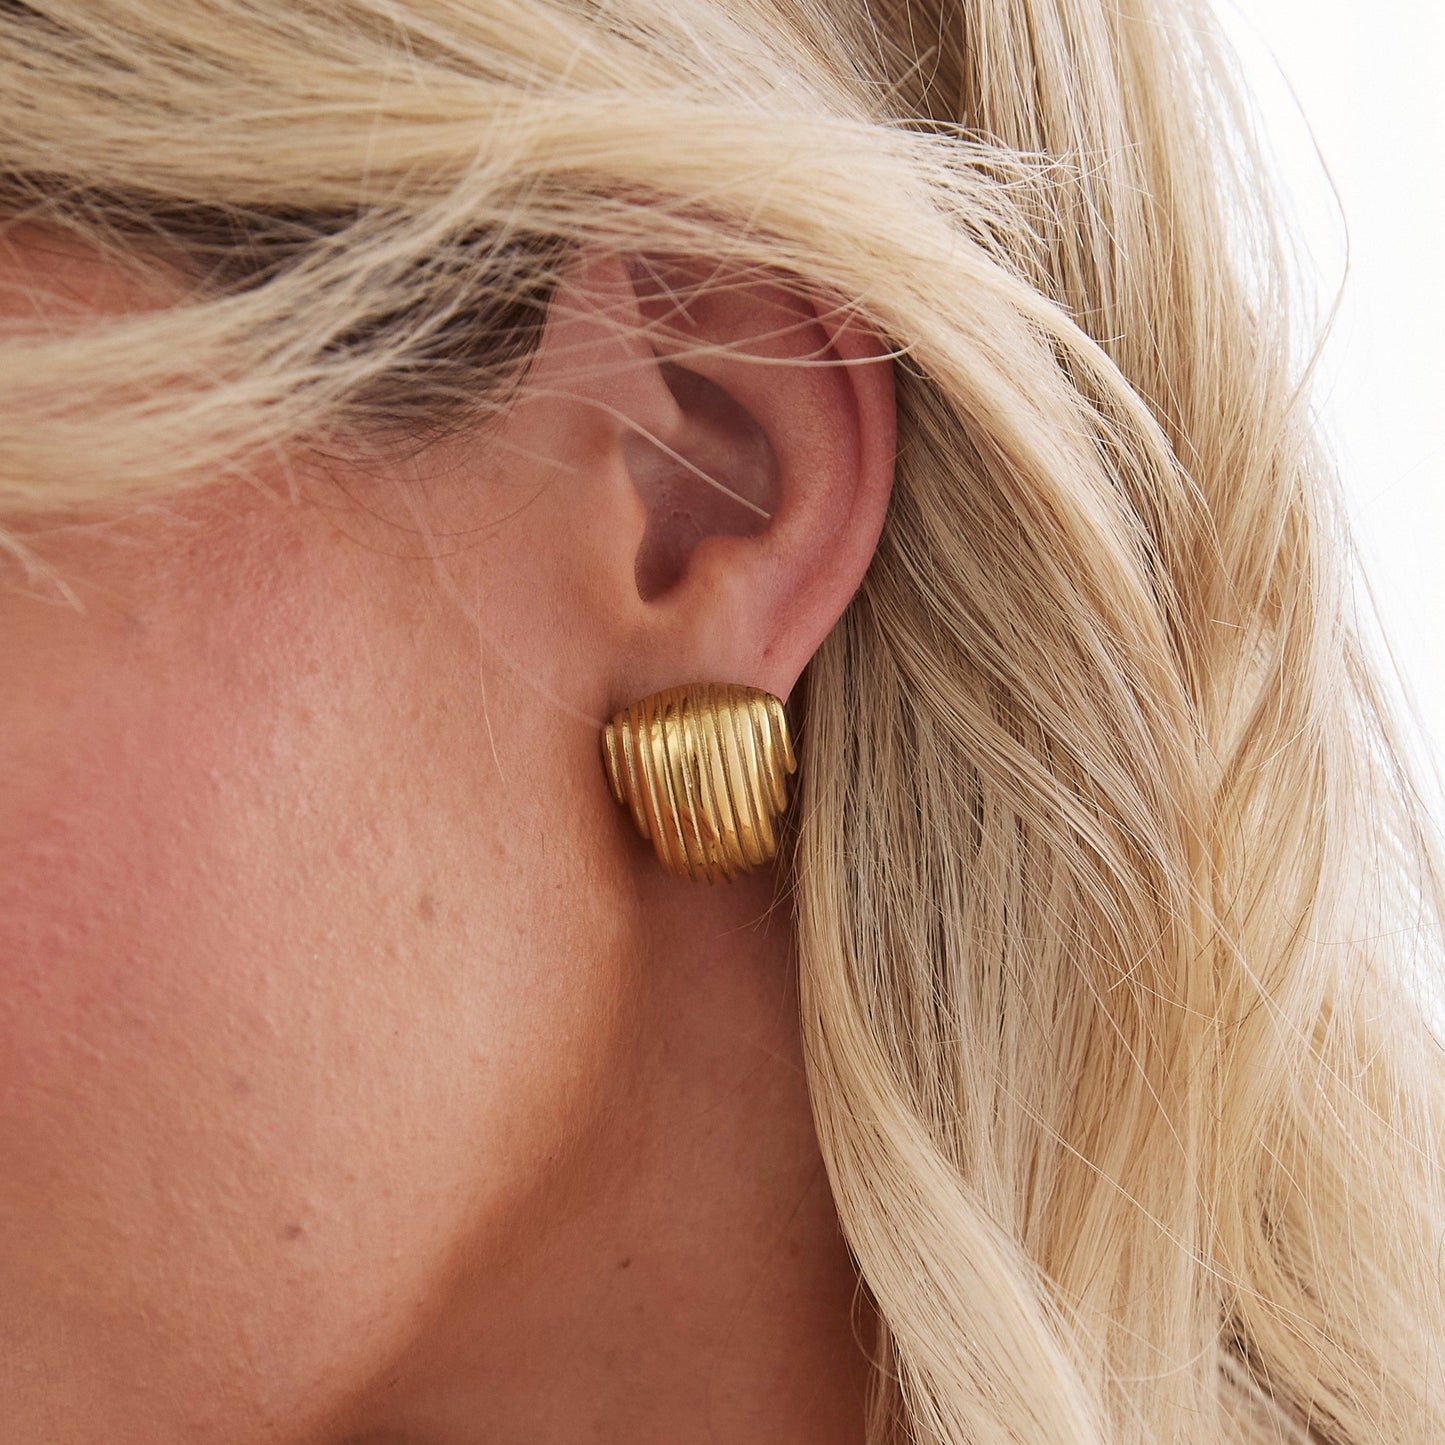 Natalie Vintage Shell Gold Earrings